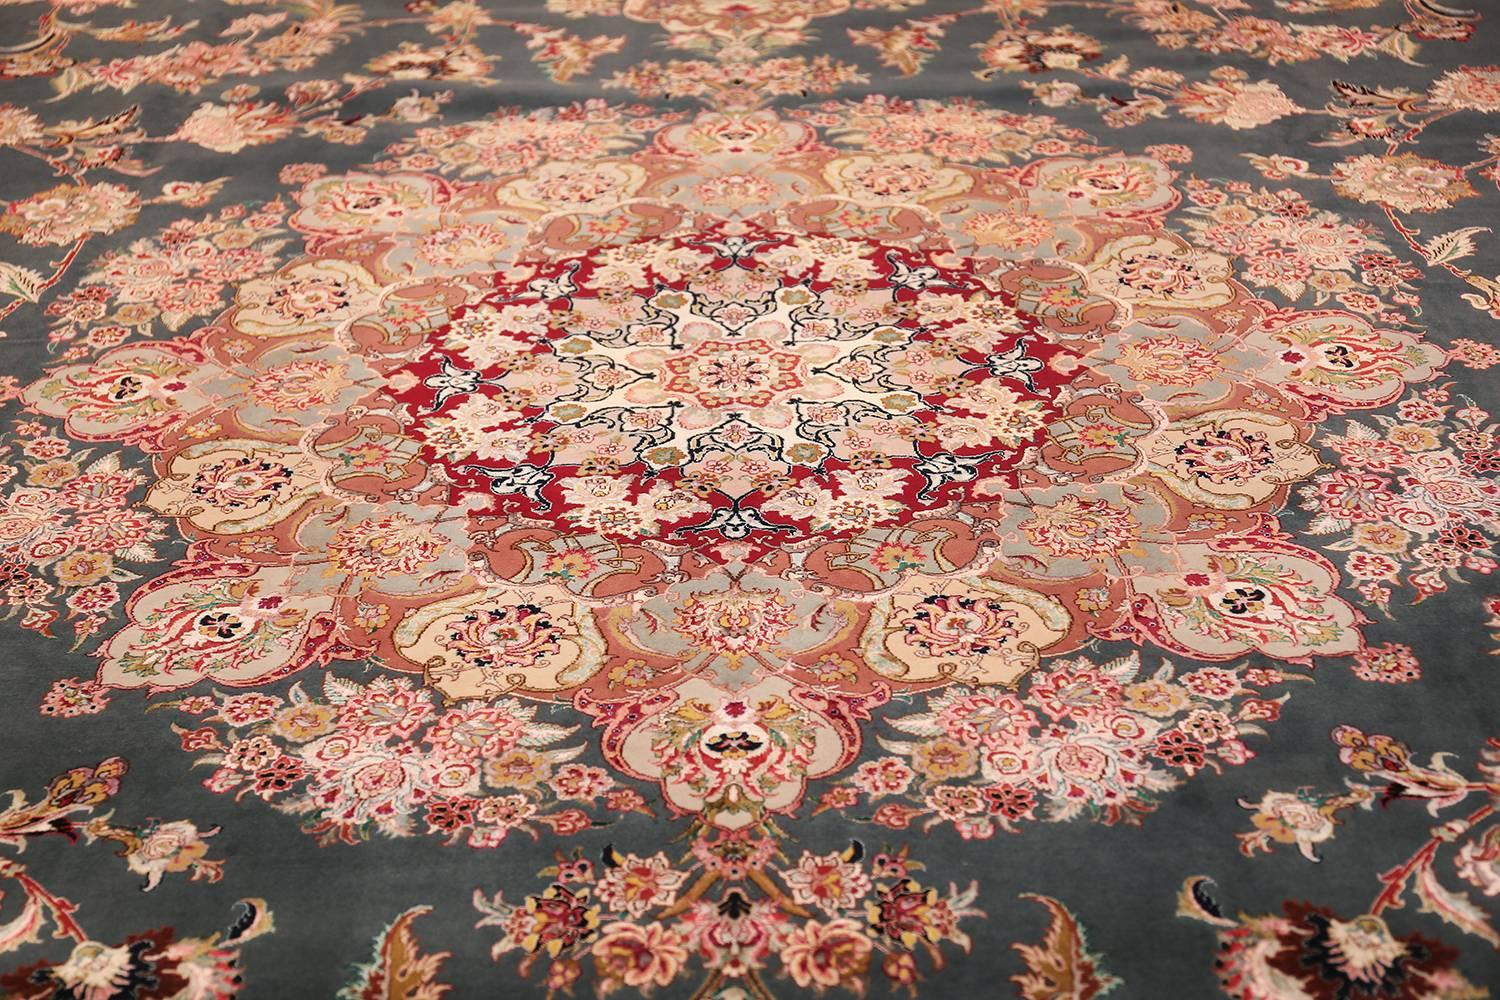 Magnifique grand tapis persan Tabriz vintage, pays d'origine / type de tapis : Tapis persan Vintage, vers la fin du 20e siècle. Taille : 11 ft 6 in x 17 ft 1 in (3.51 m x 5.21 m)

